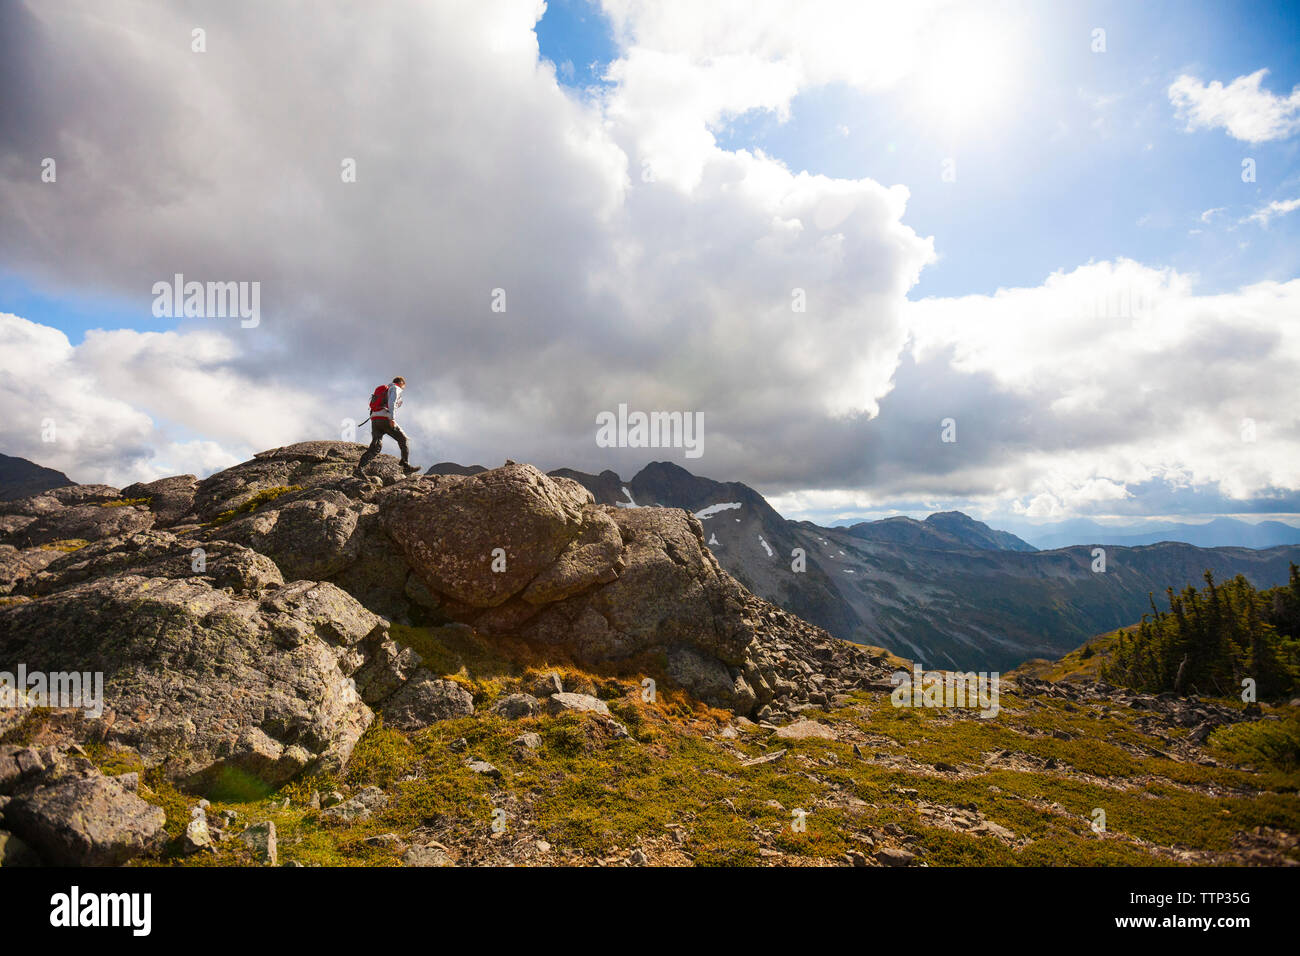 Caminante la escalada en las rocas contra el cielo nublado Foto de stock